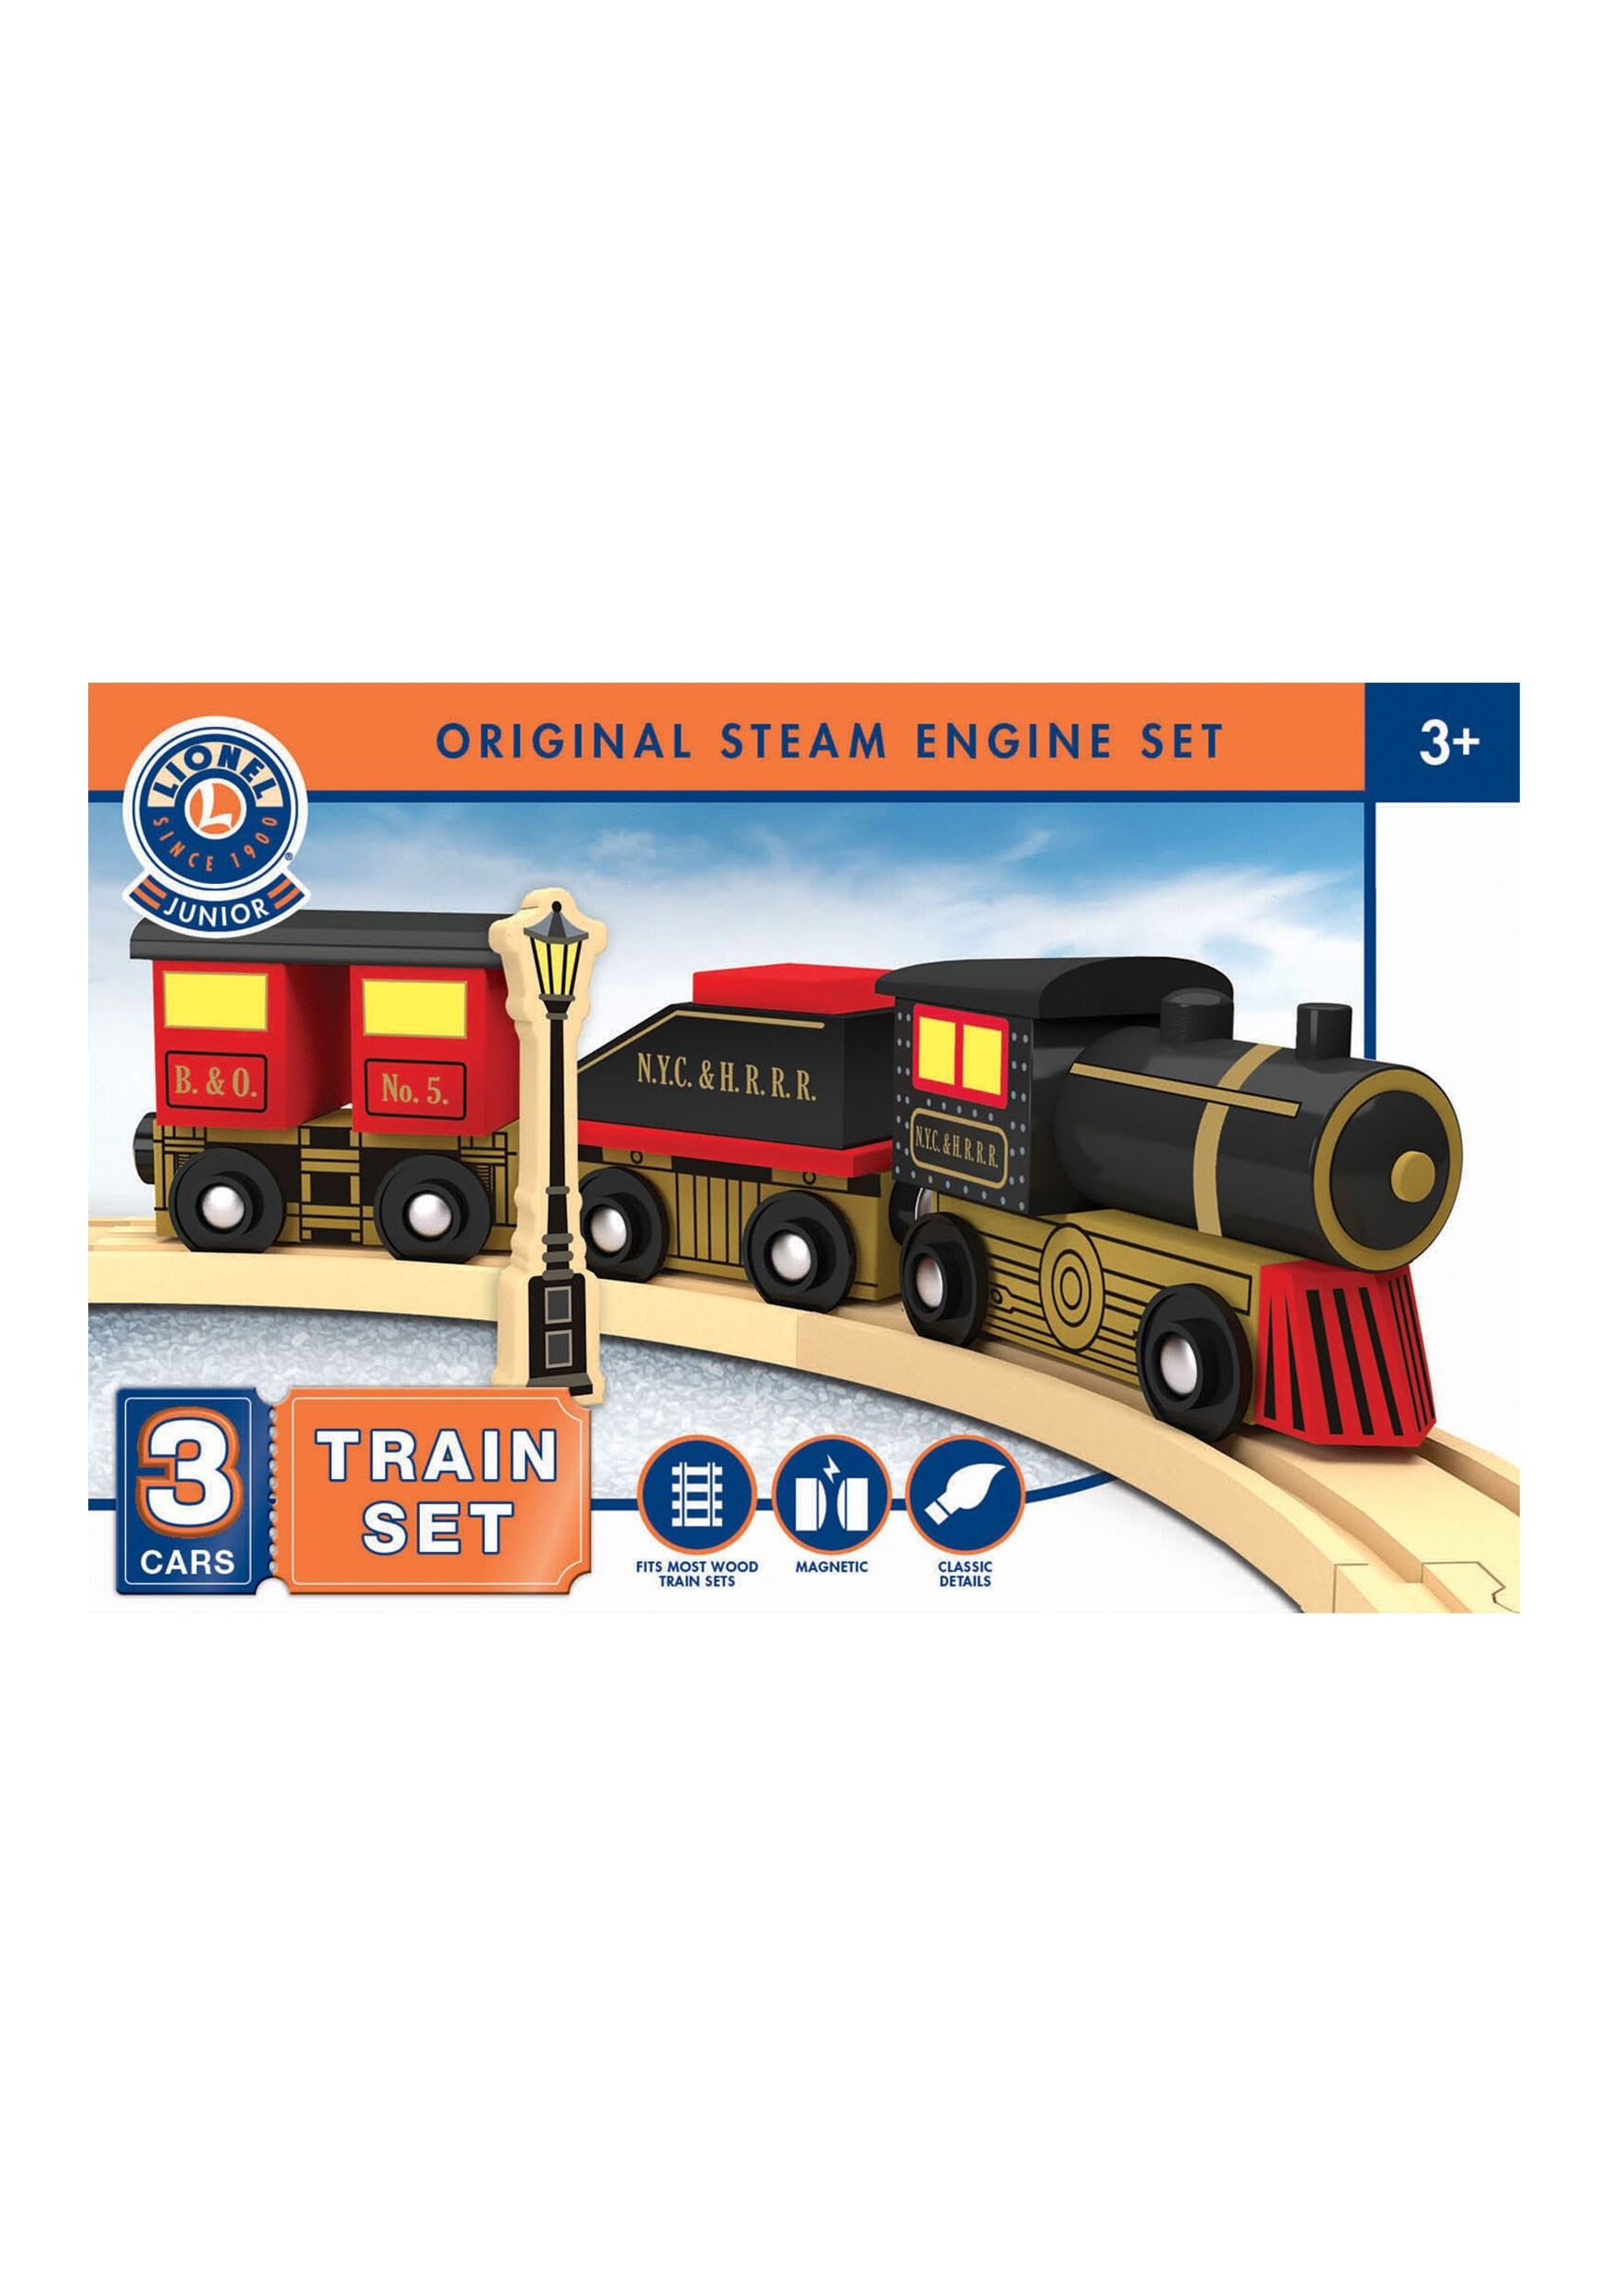 Lionel Original Steam Engine Set Toy